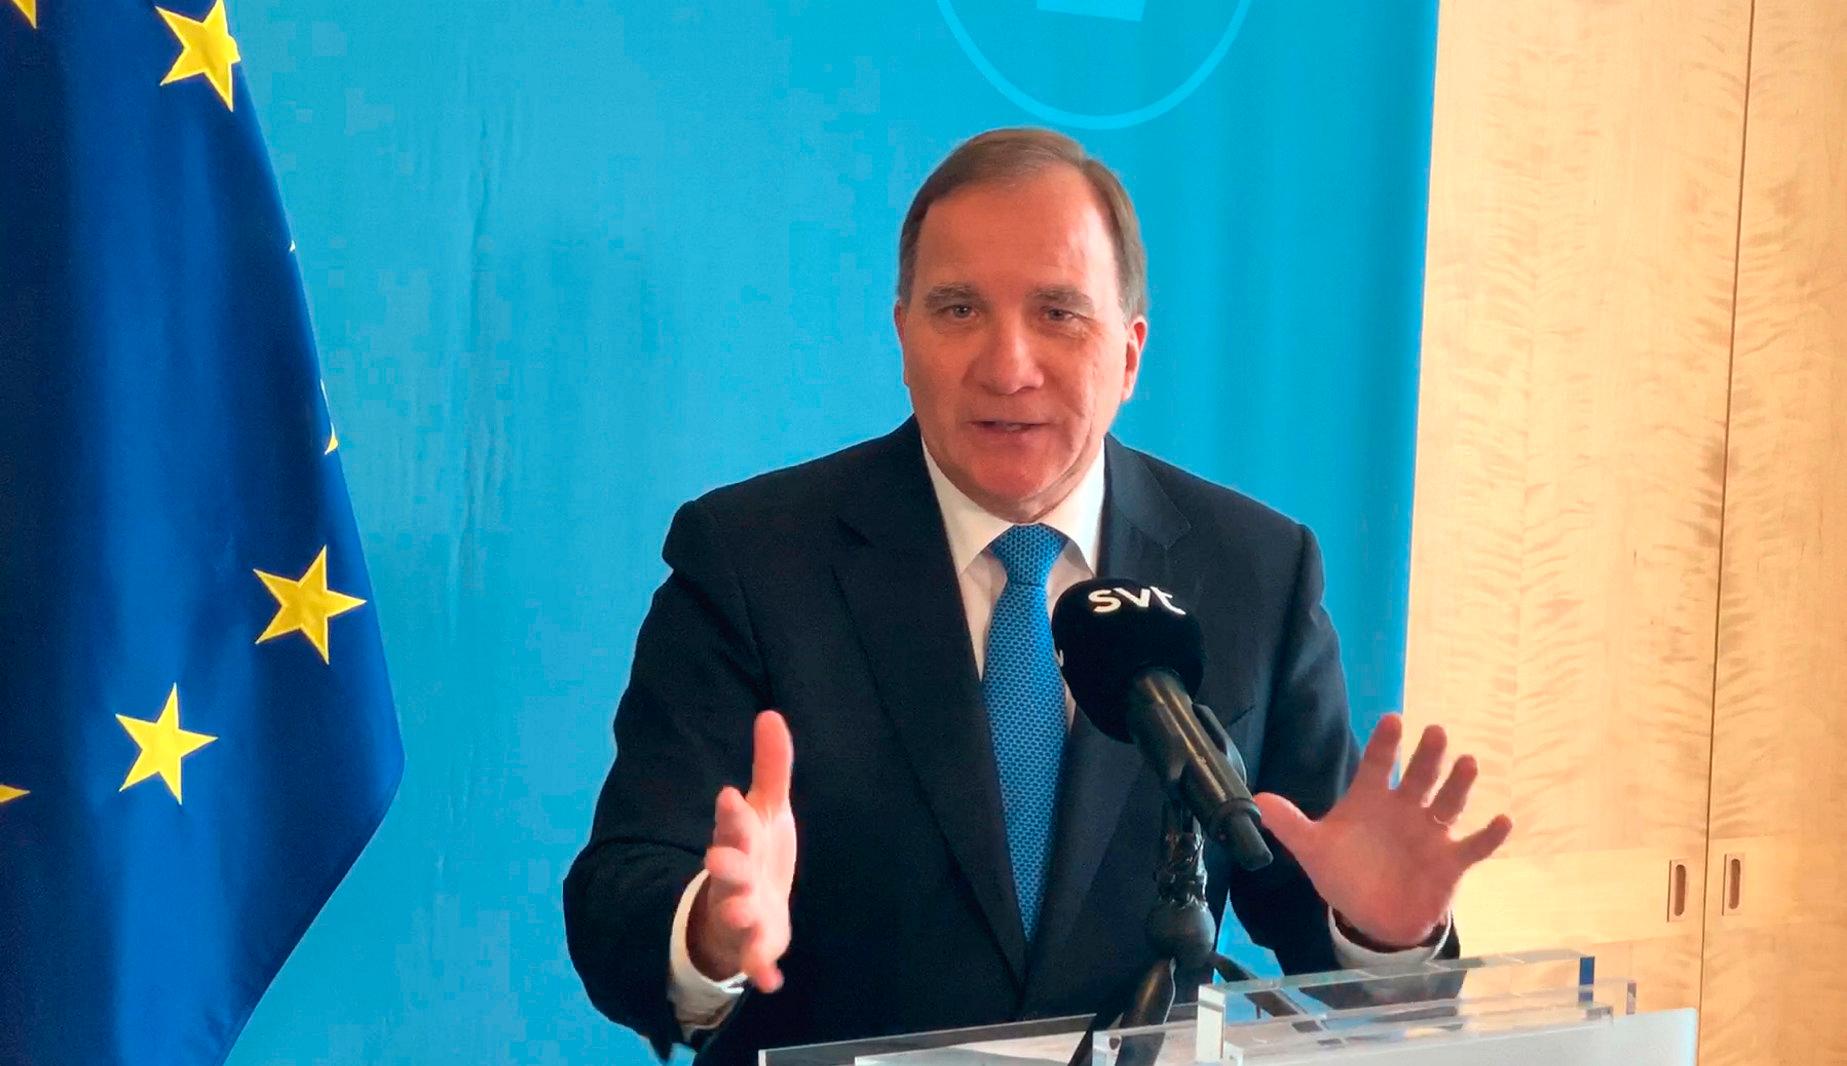 Statsminister Stefan Löfven (S) håller pressträff efter uppgörelsen om en EU-budget med stöd till coronadrabbade länder.